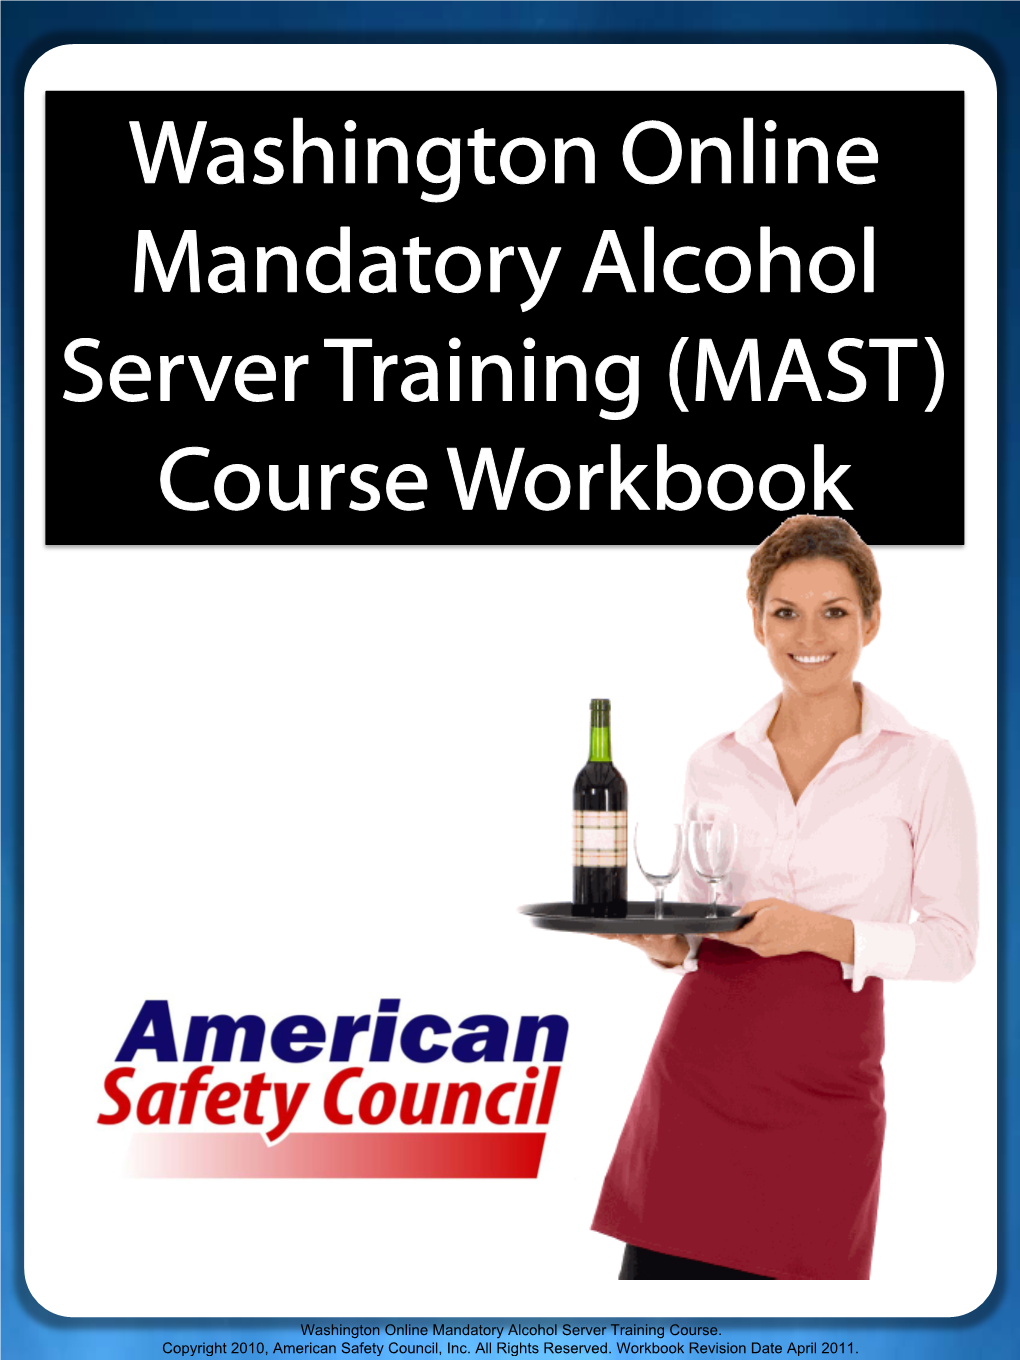 Washington Online Mandatory Alcohol Server Training (MAST) Course Workbook